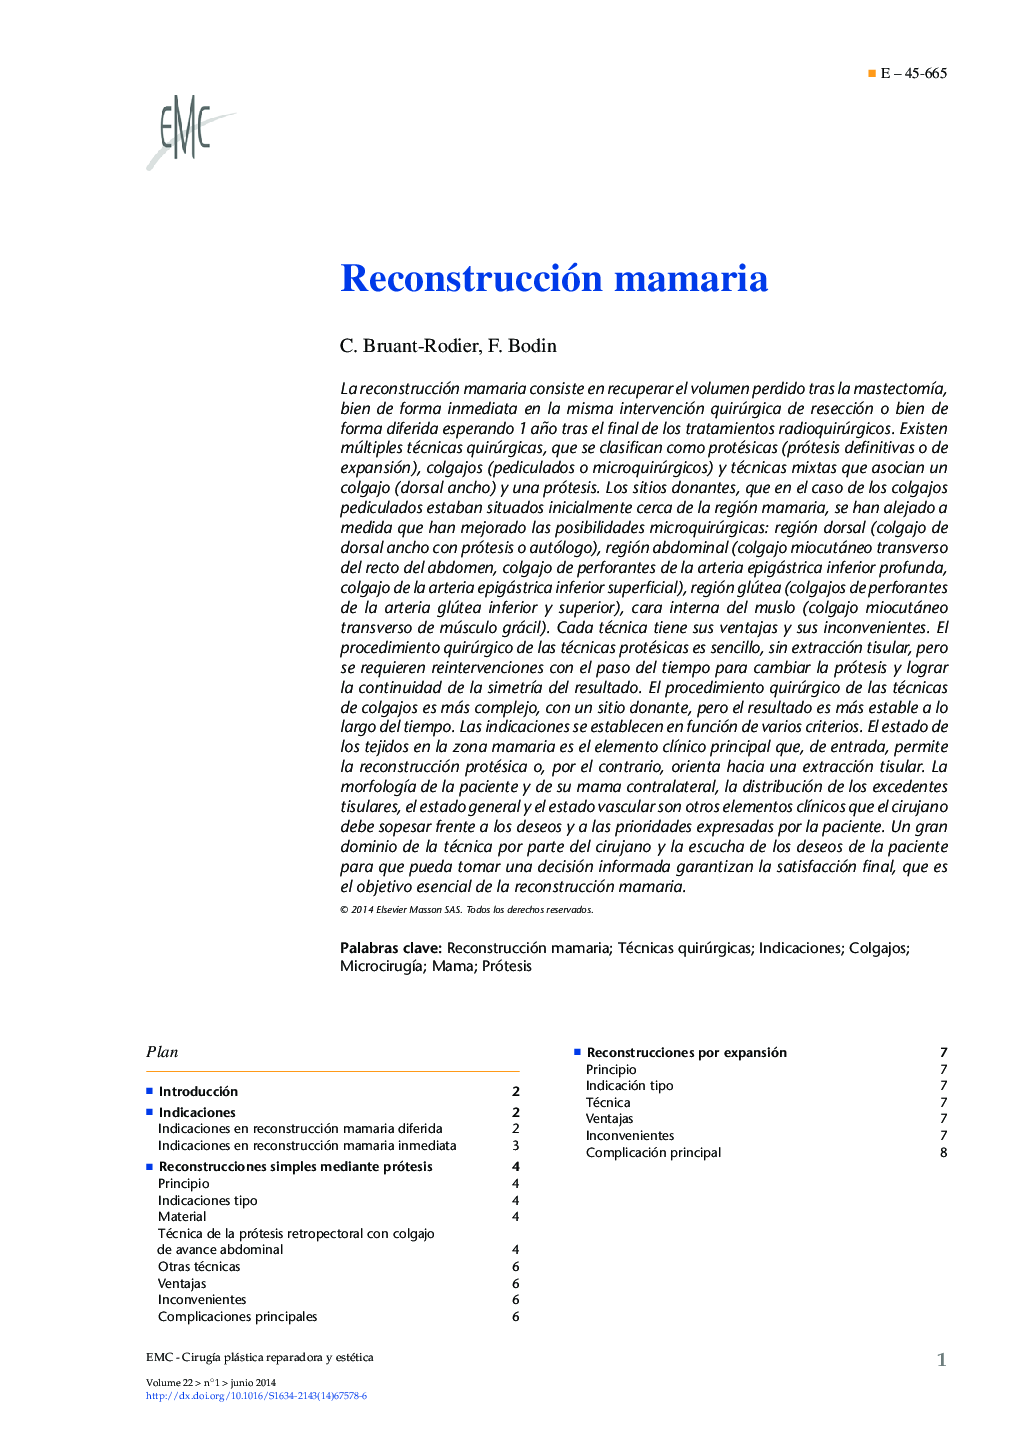 Reconstrucción mamaria